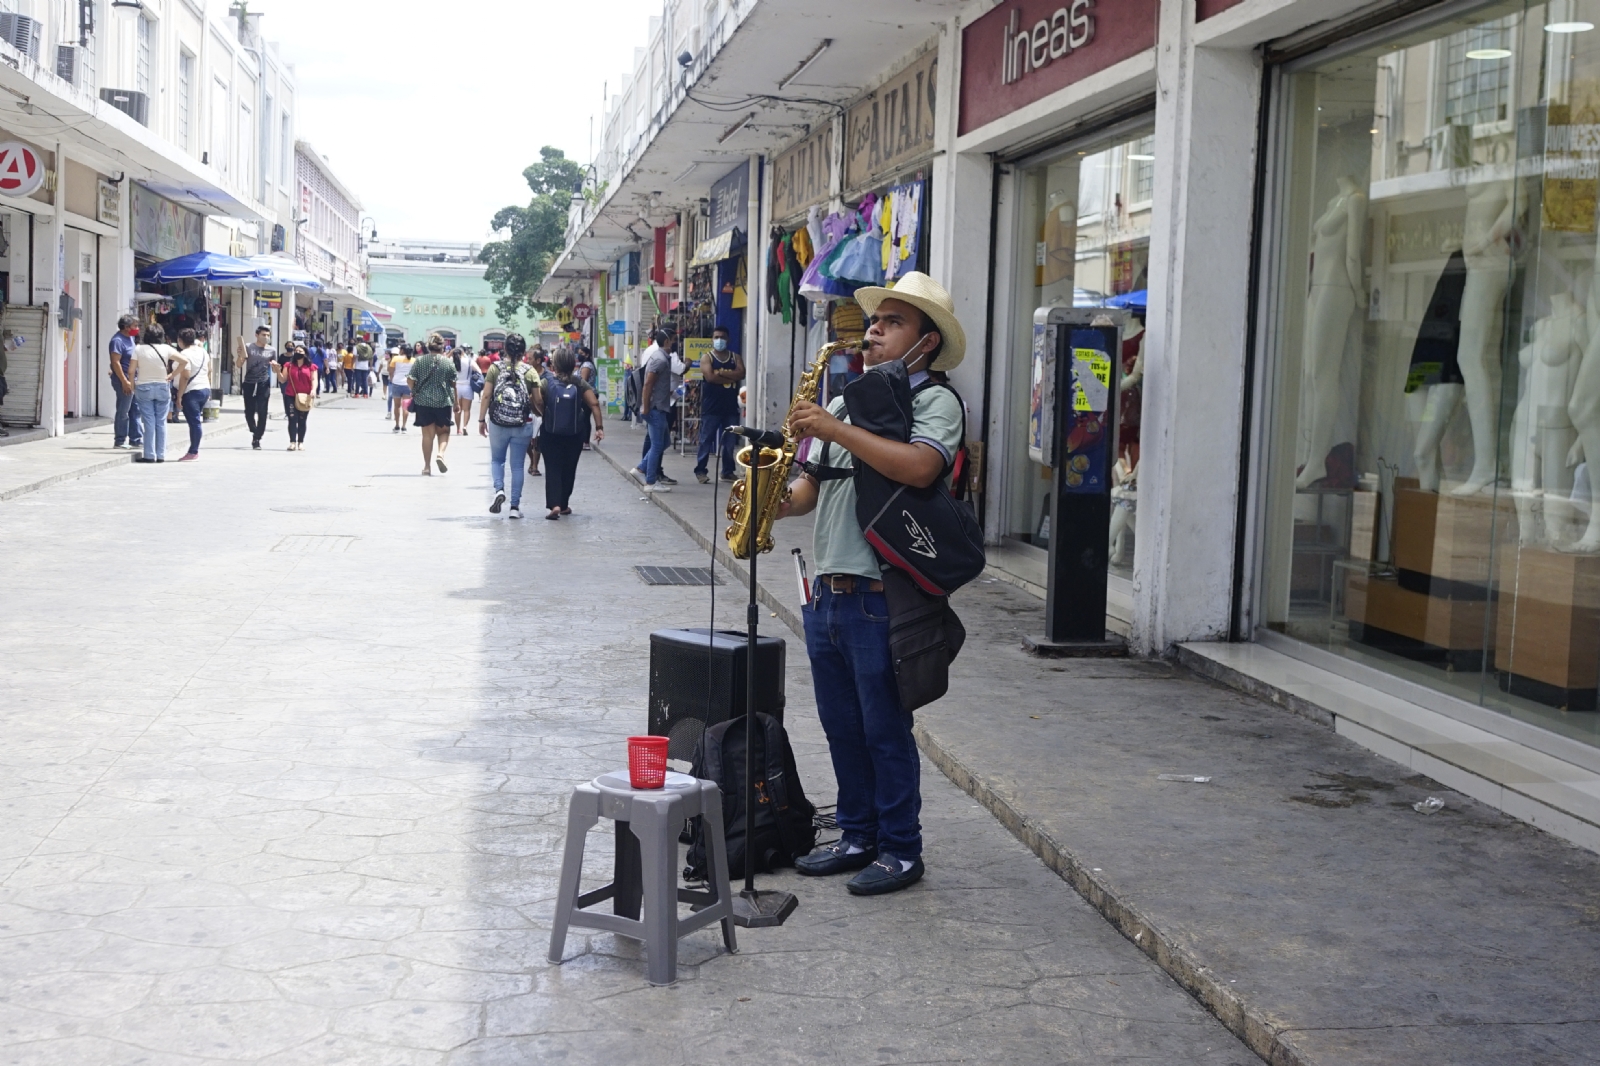 Benjamín Serritos, el saxofonista invidente que lleva su música a las calles de Mérida